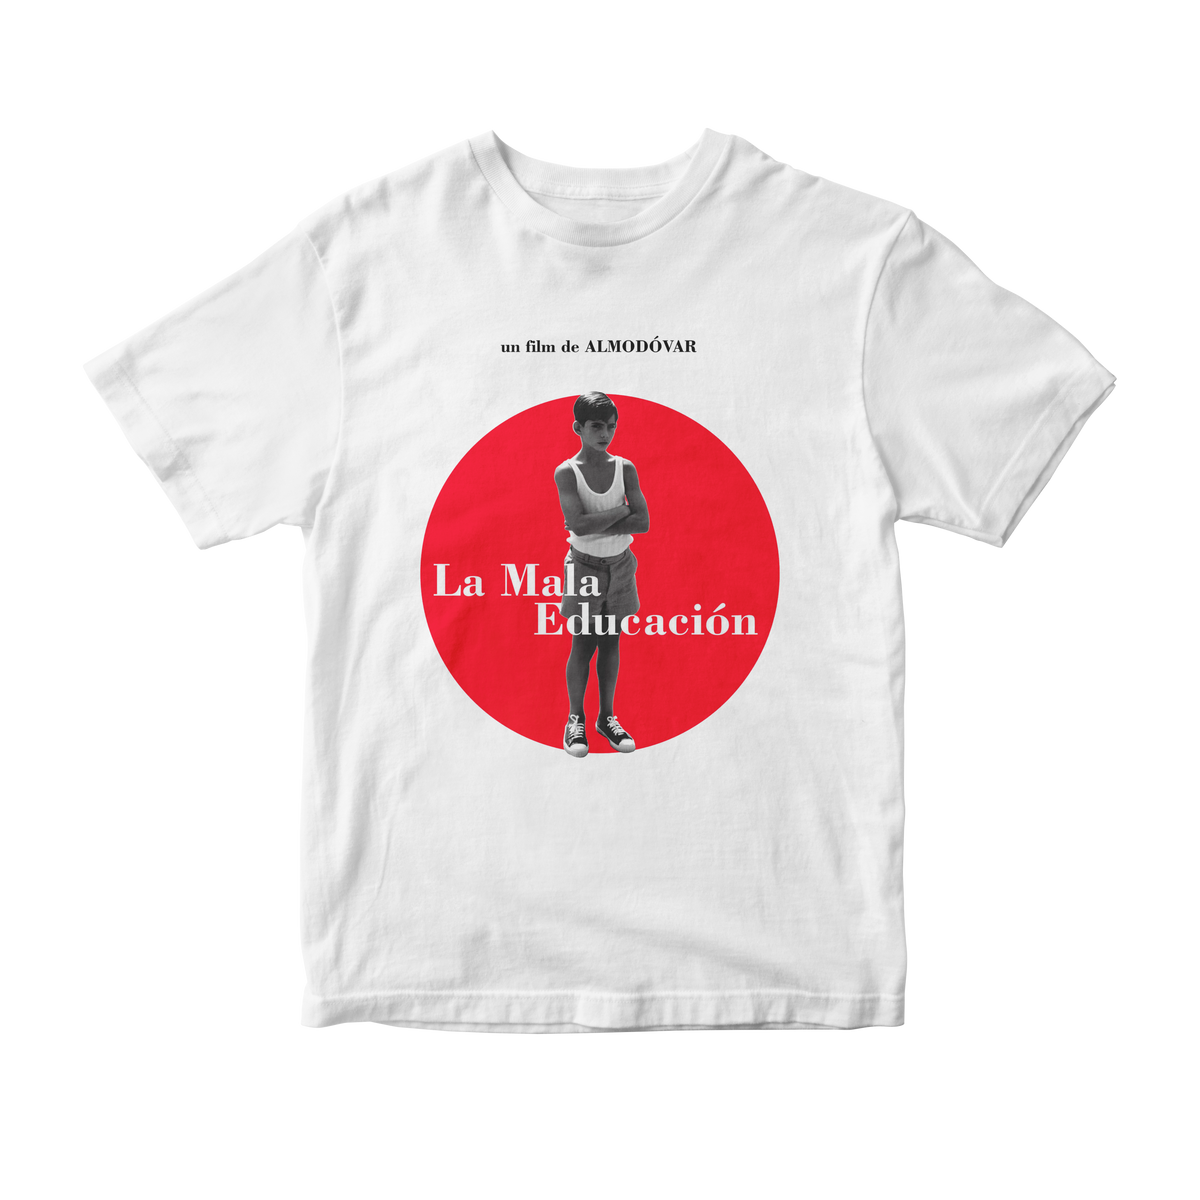 Nome do produto: Camiseta La Mala Educación (Almodóvar)